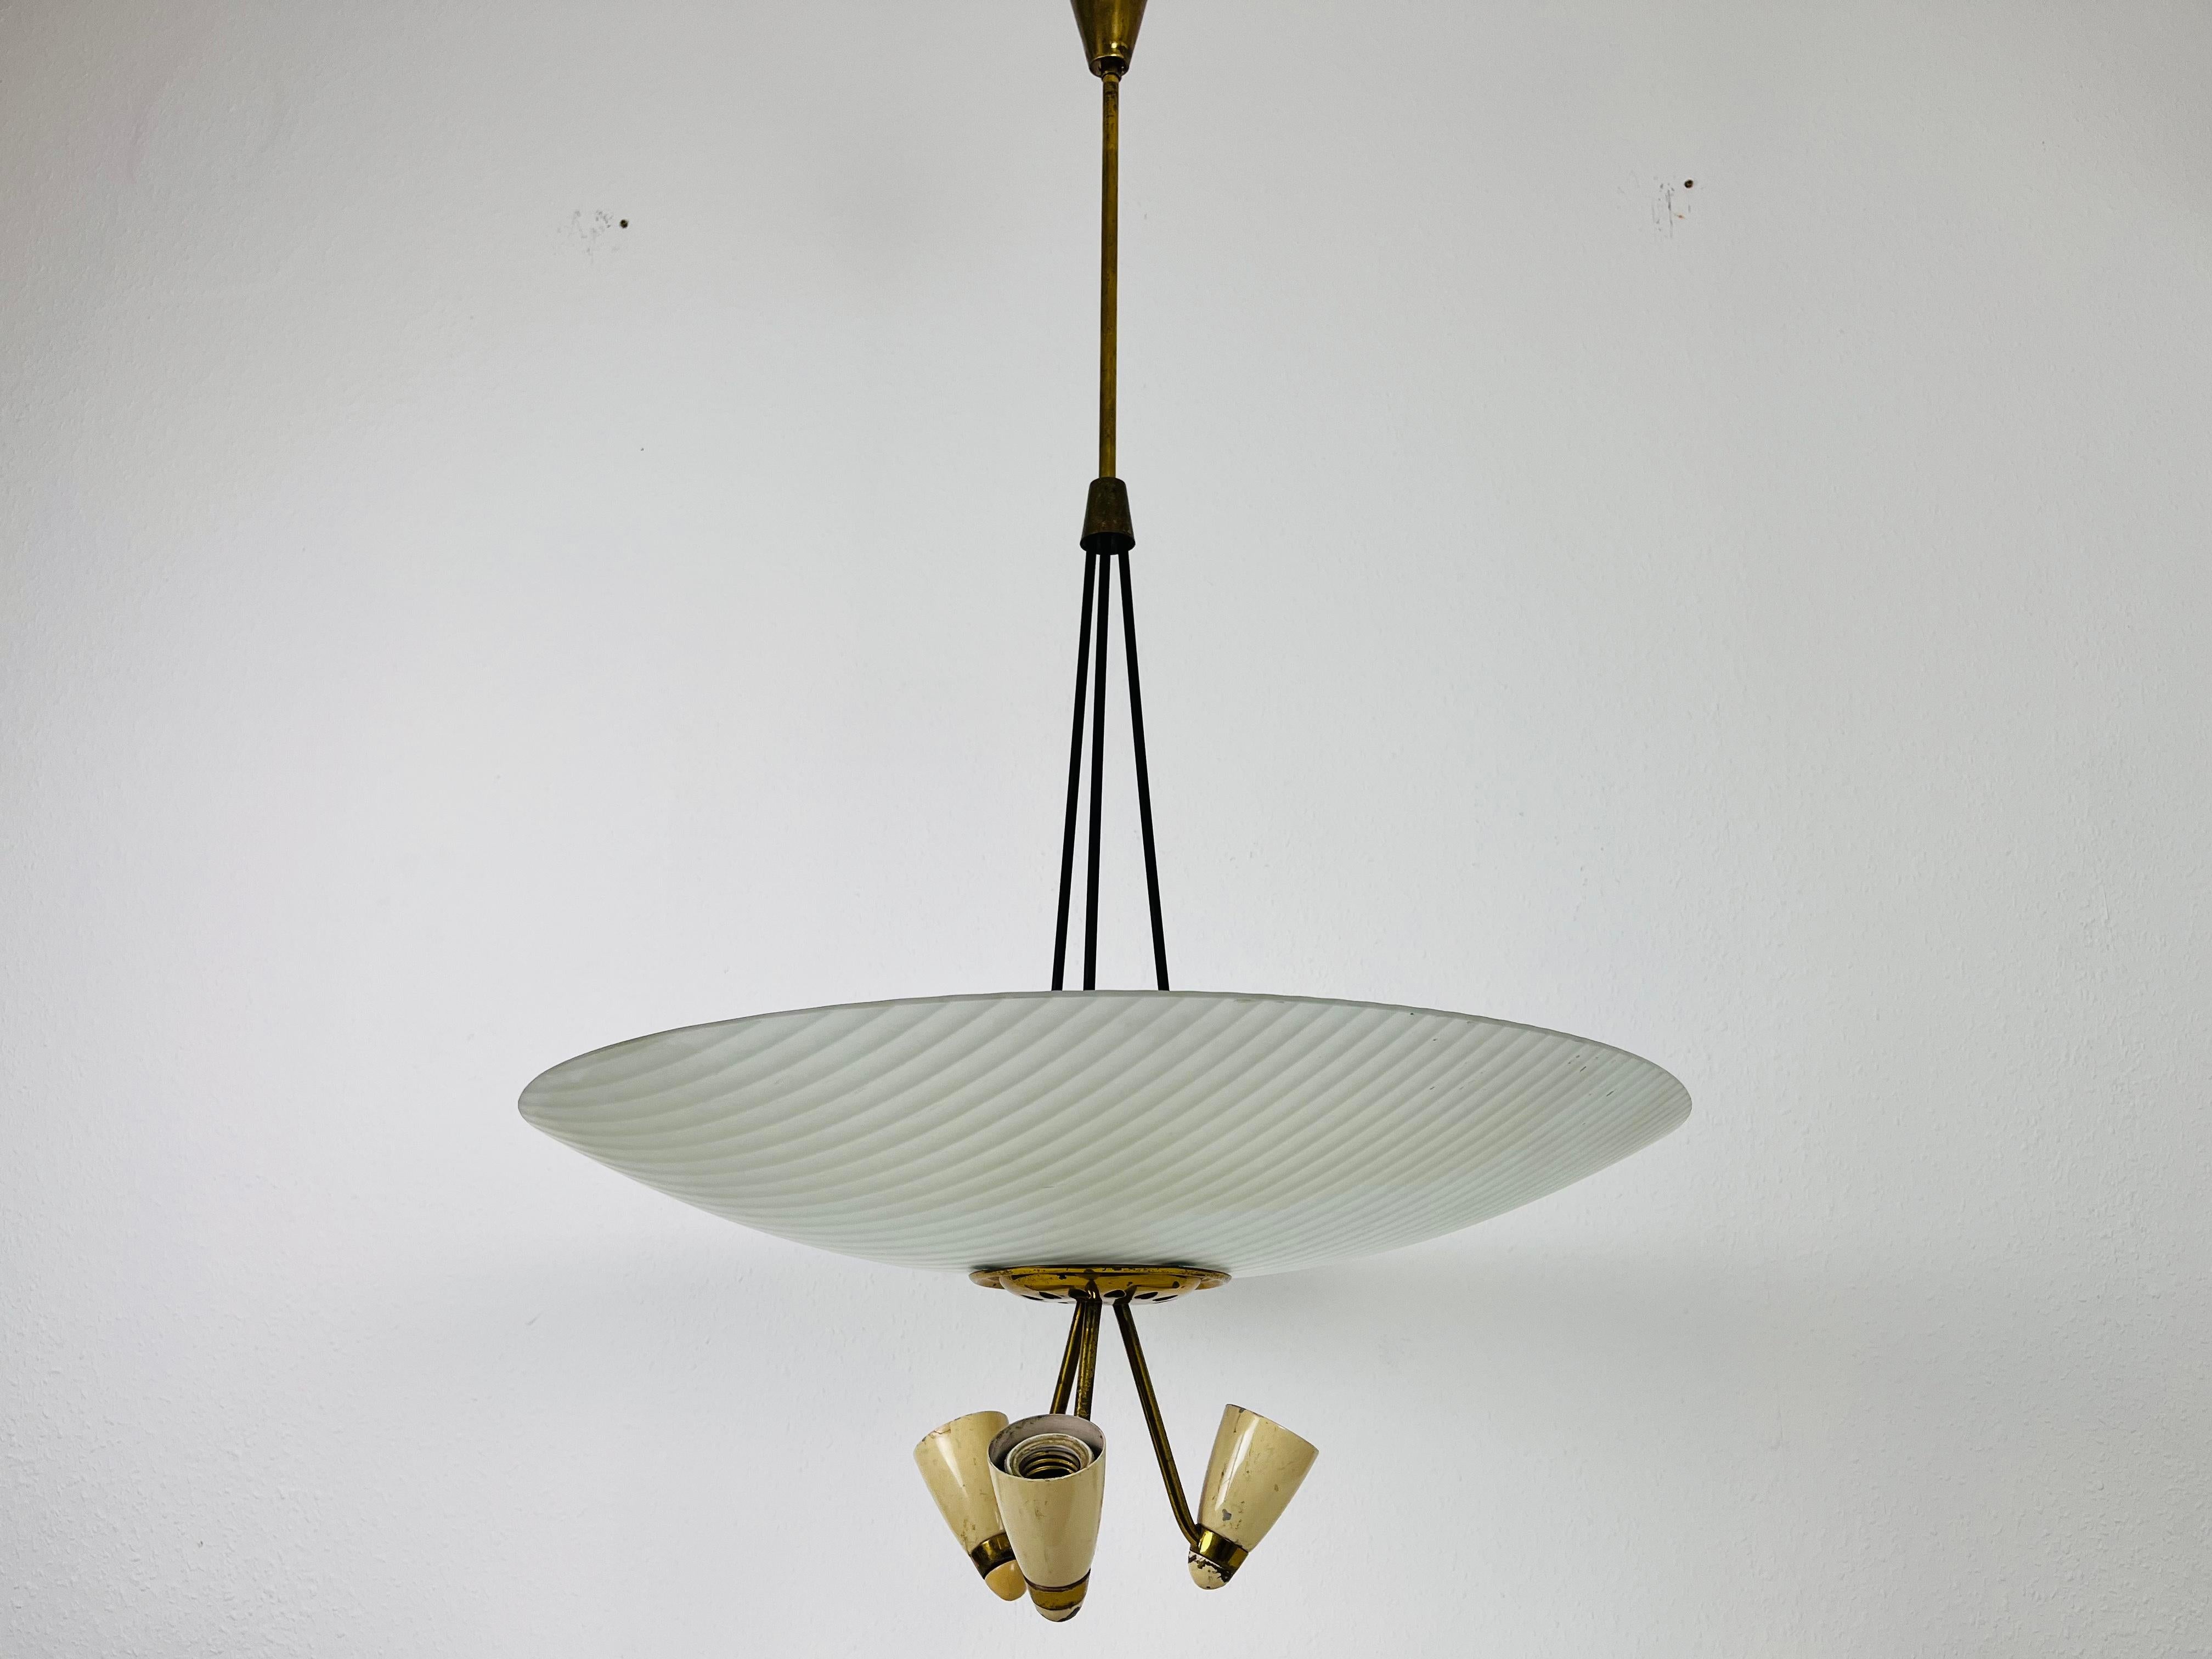 Ein Sputnik-Kronleuchter, der in den 1950er Jahren in Italien hergestellt wurde. Er fasziniert durch seine einzigartige Untertassenform und die wunderschönen Messingelemente.

Die Leuchte benötigt 3 E27 (US E26) Glühbirnen unter dem Glaselement.